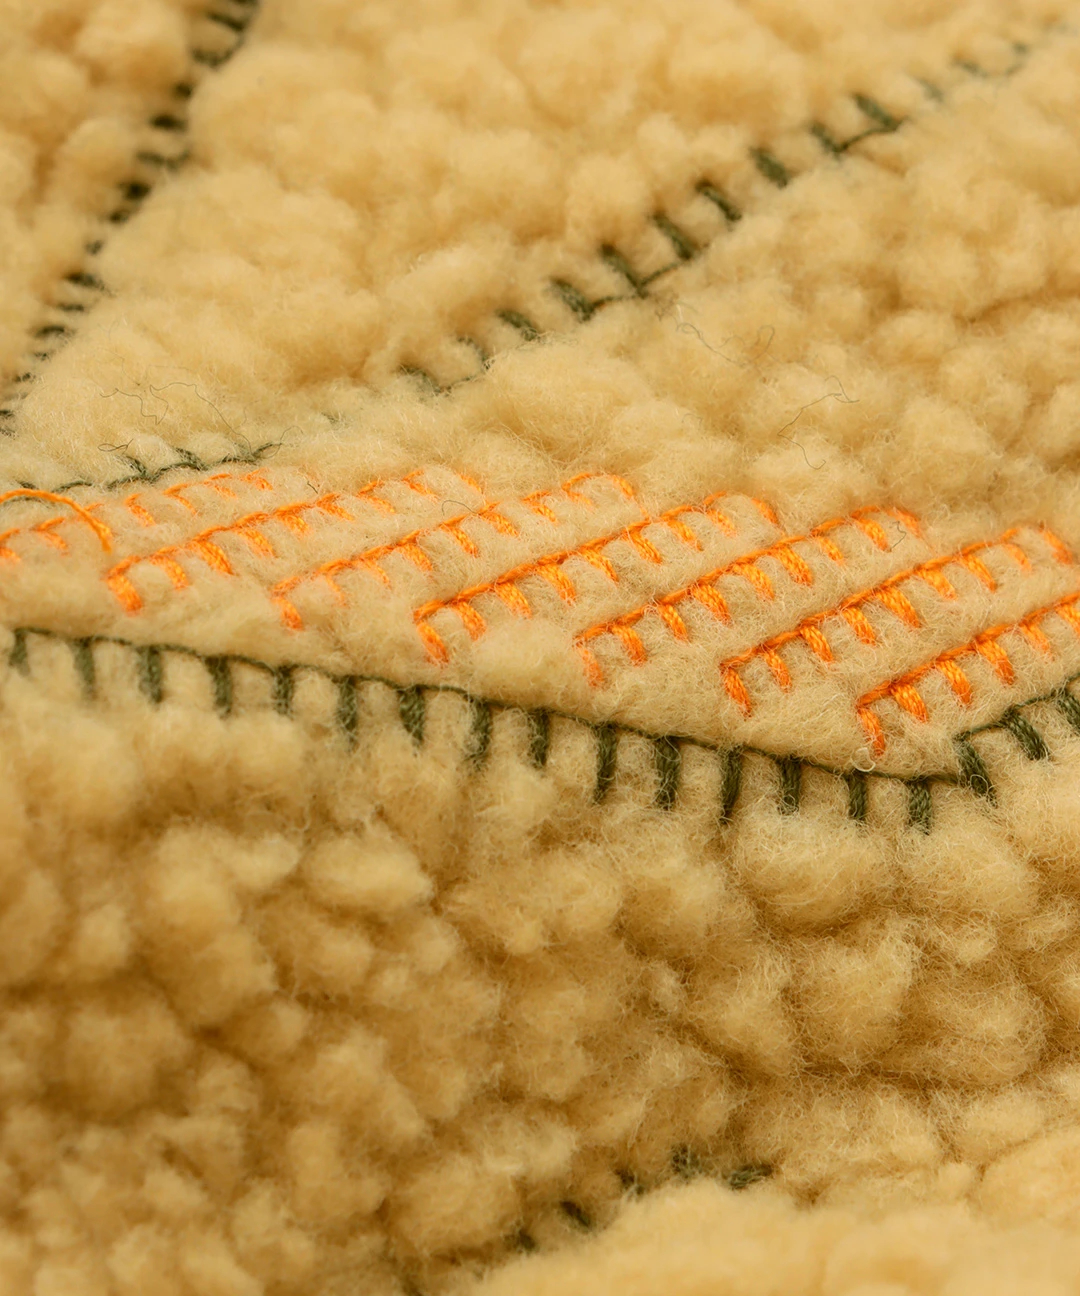 ボアキルトコンビチマヨ刺繍コート / コート | エスニックファッション